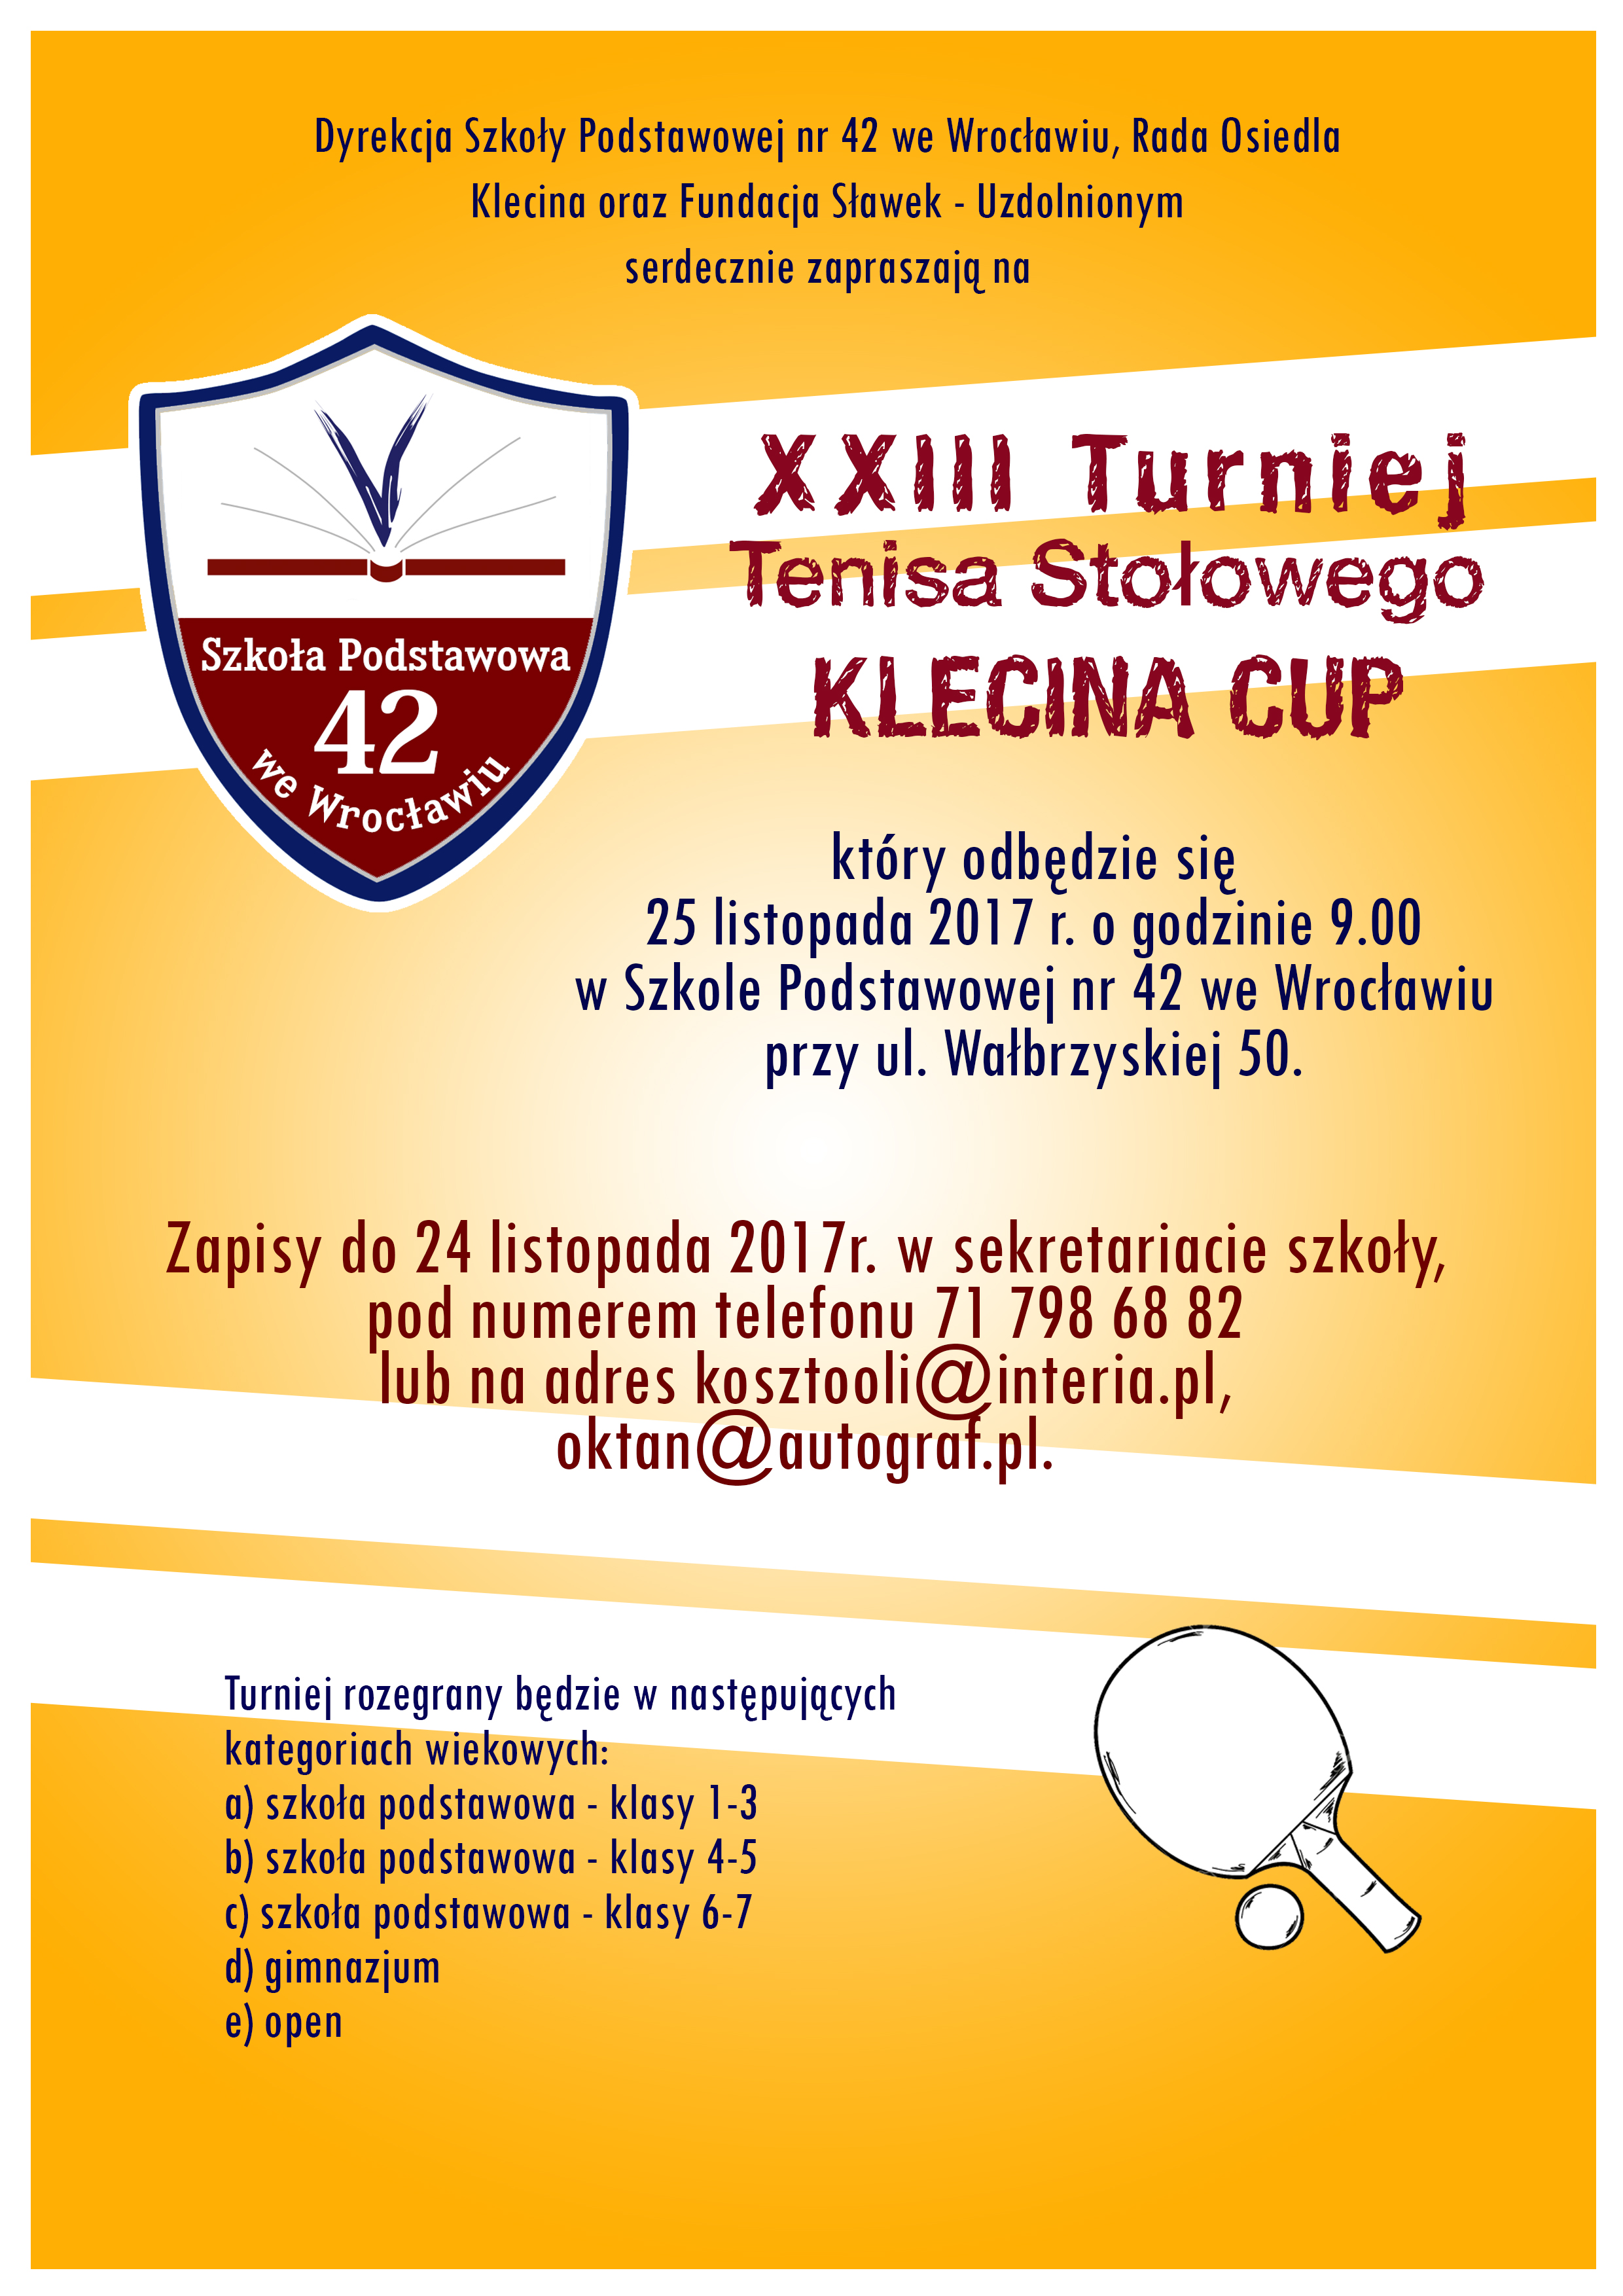 Plakat turnieju XXIII Turniej Tenisa Stołowego KLECINA CUP